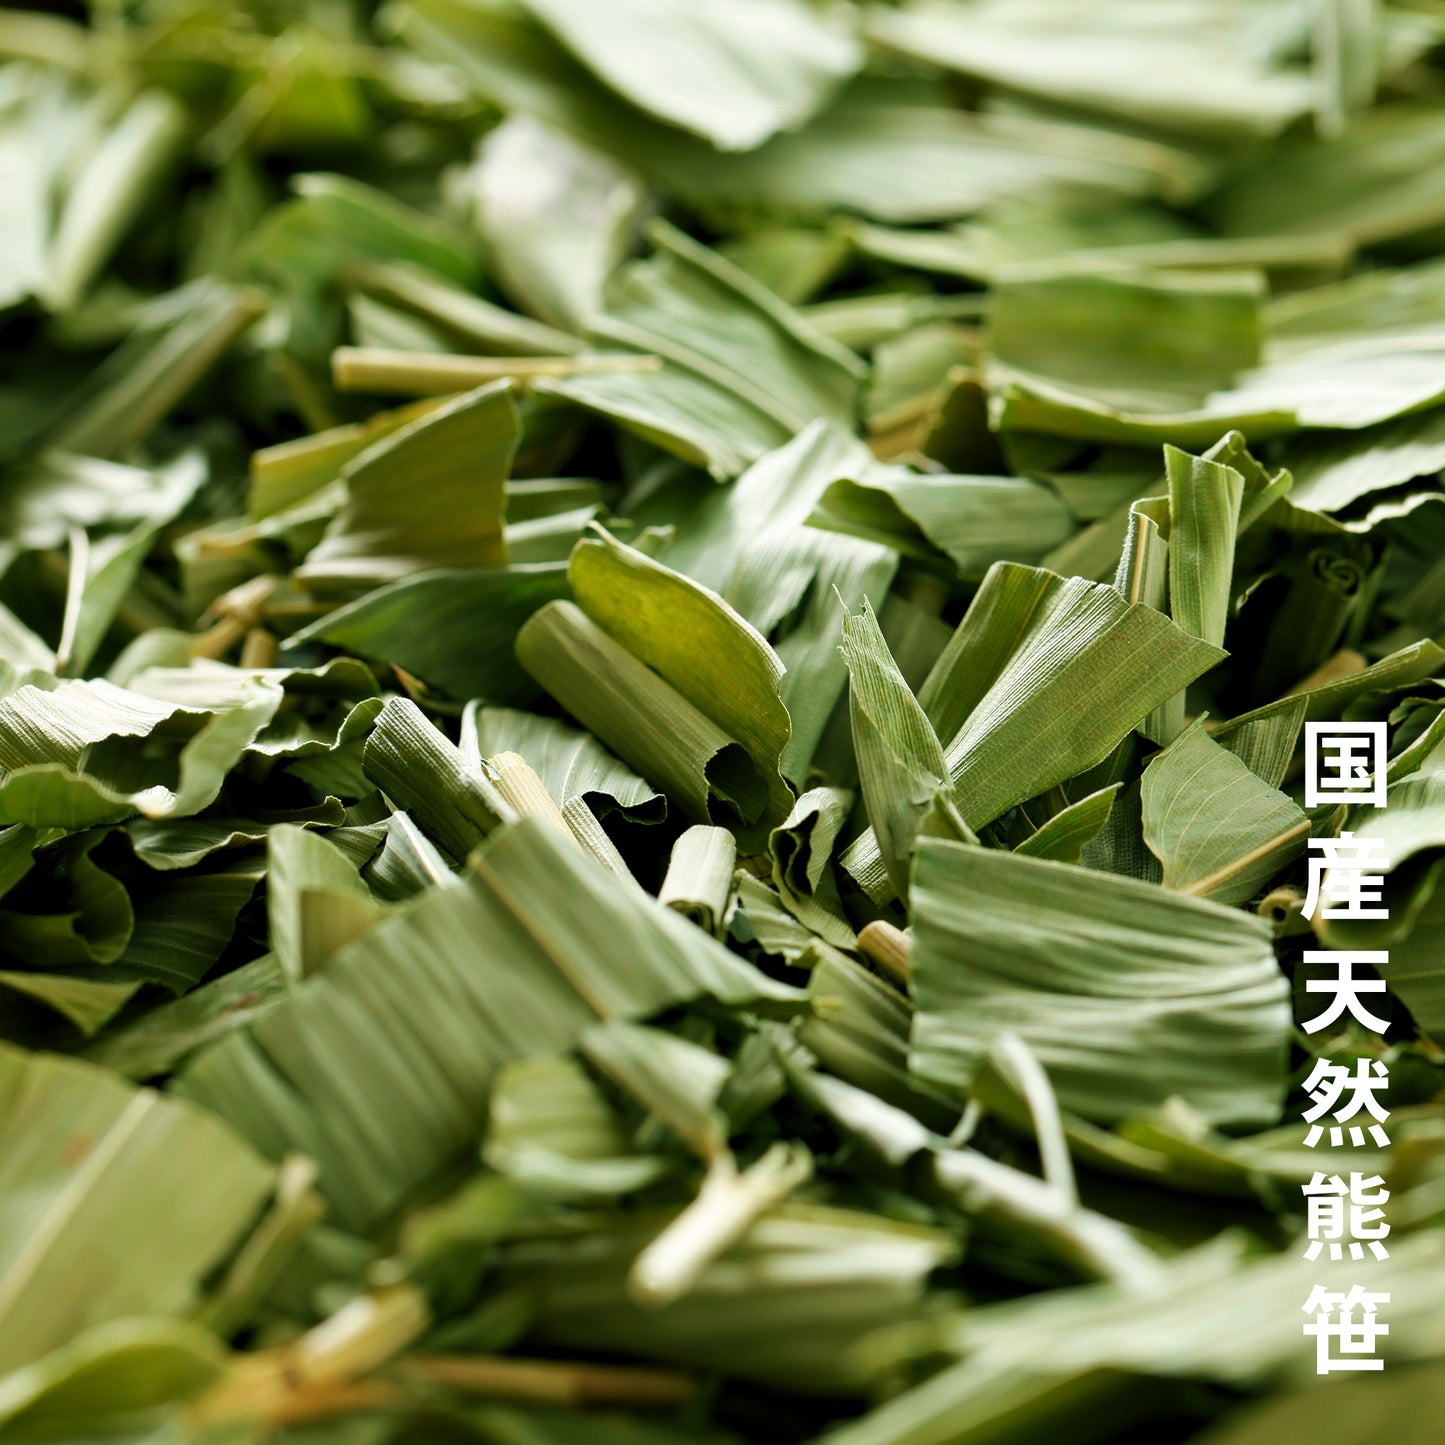 笹団子茶×1パック(15包入り)